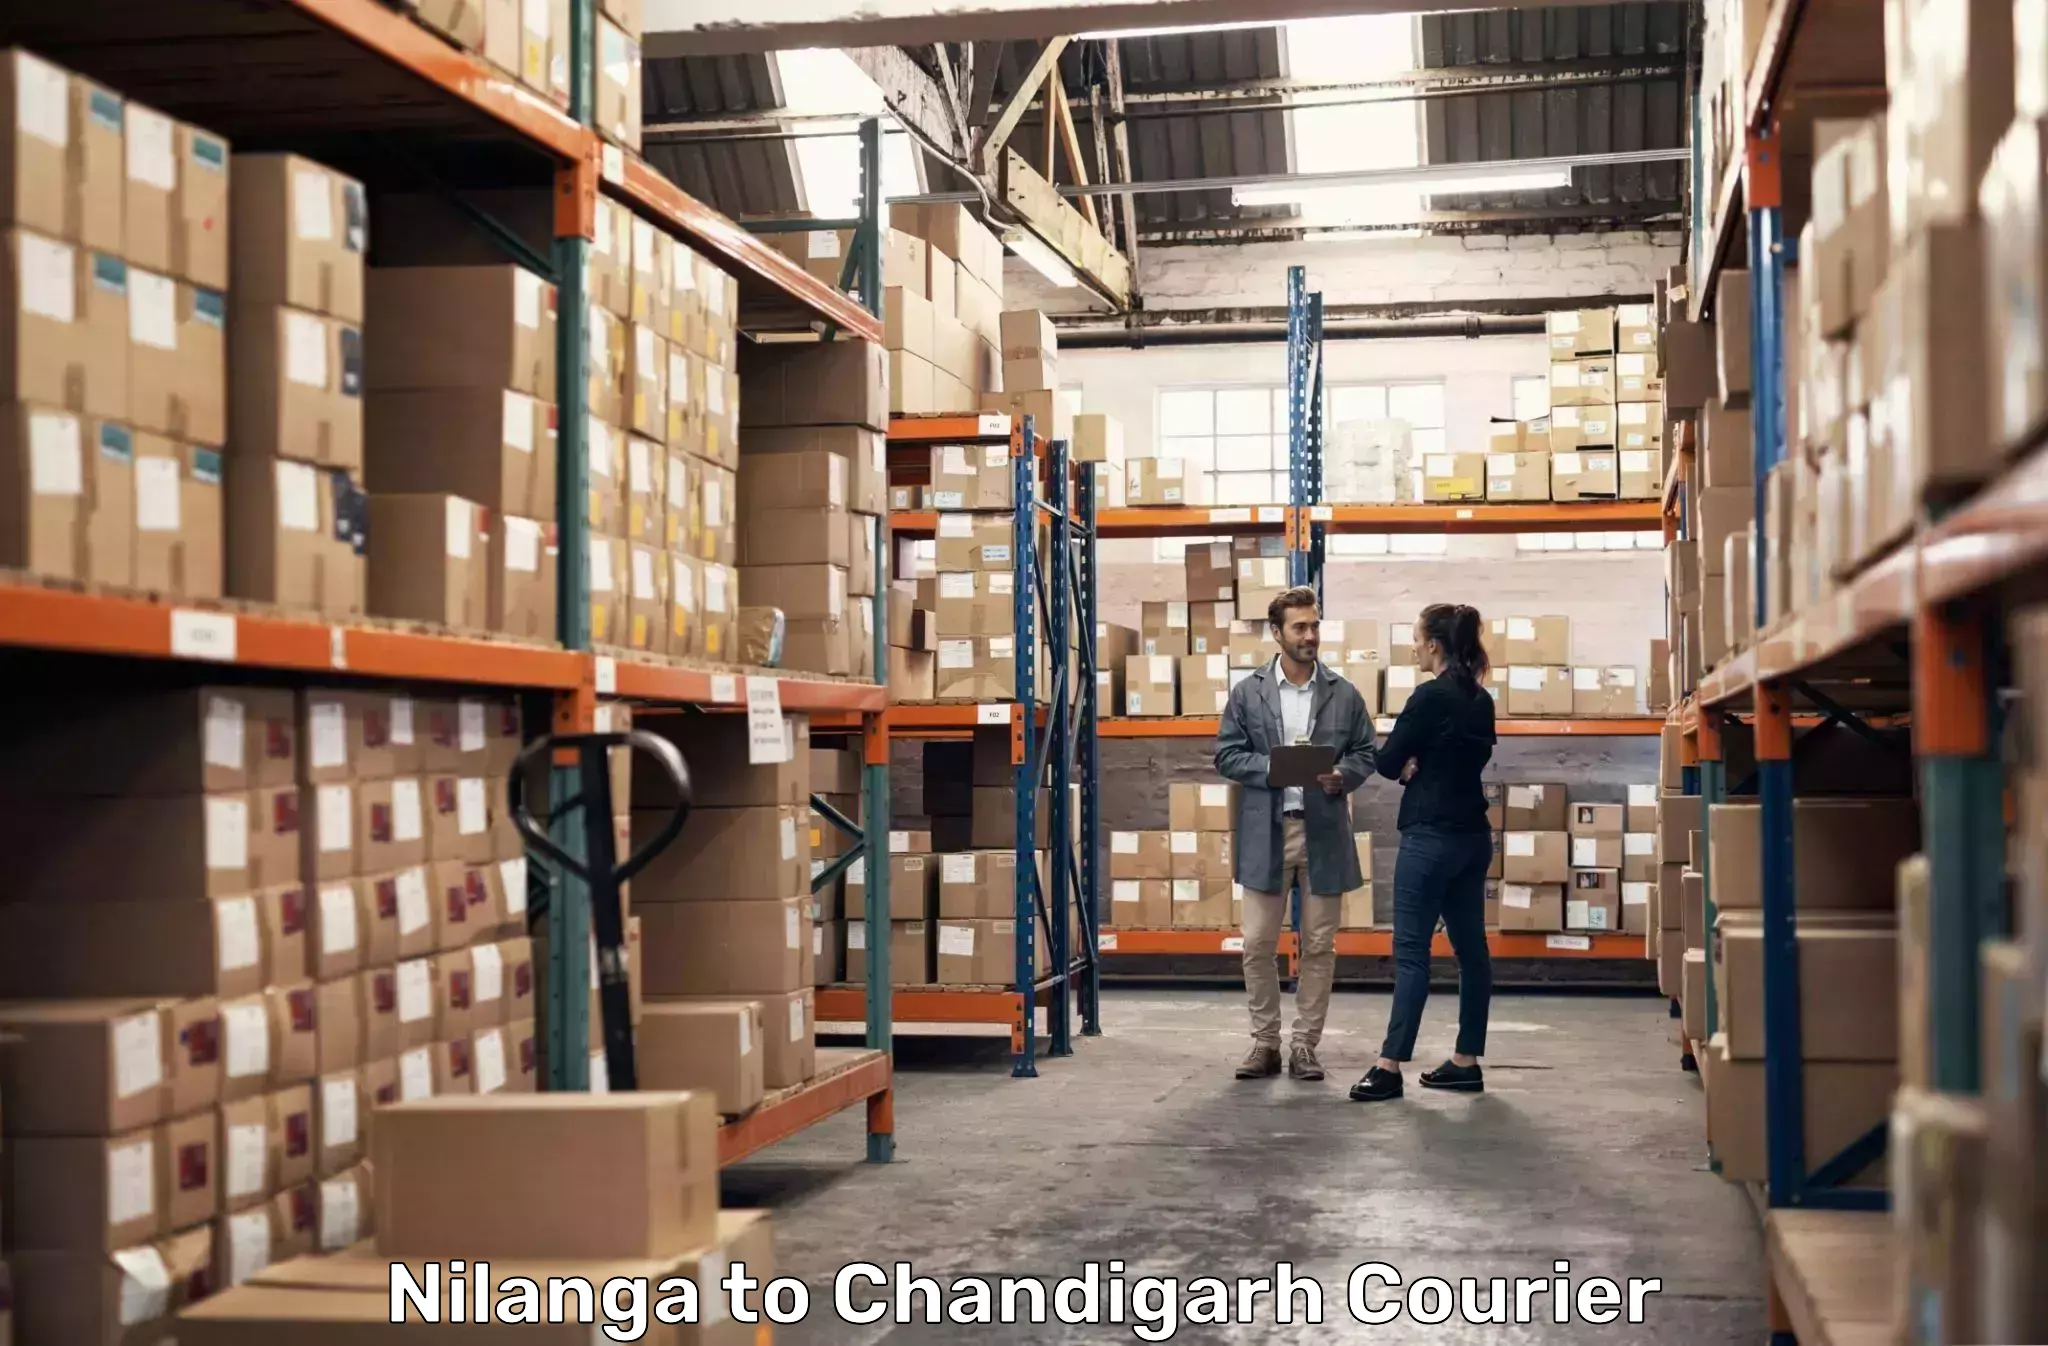 Courier service comparison Nilanga to Kharar